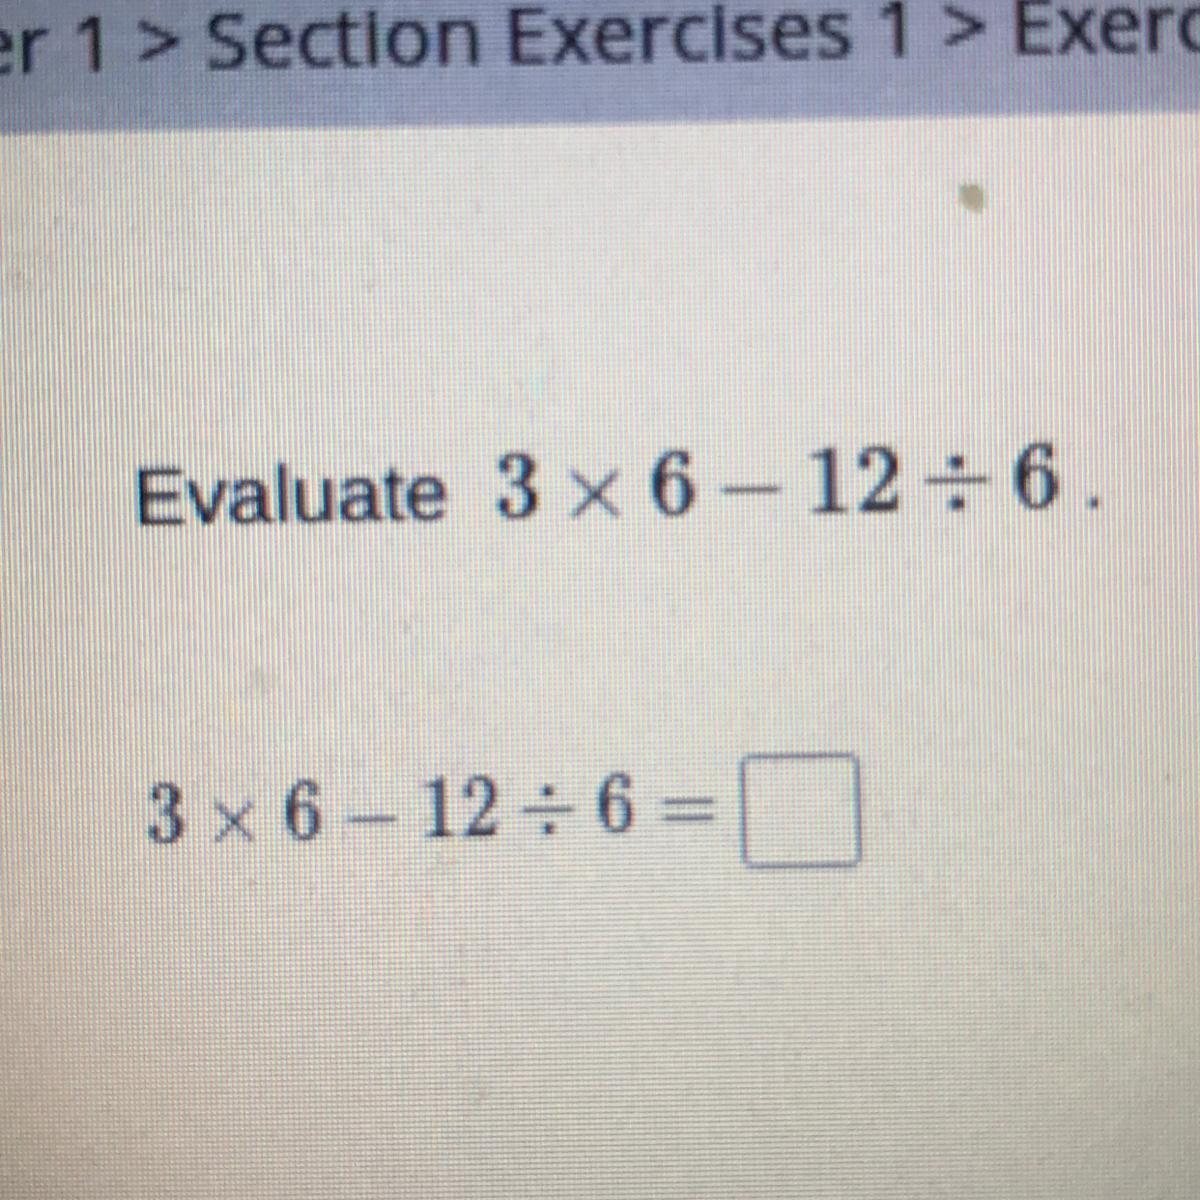 Evaluate 3 X 6 - 12 + 6.3 X 6 - 12 / 6